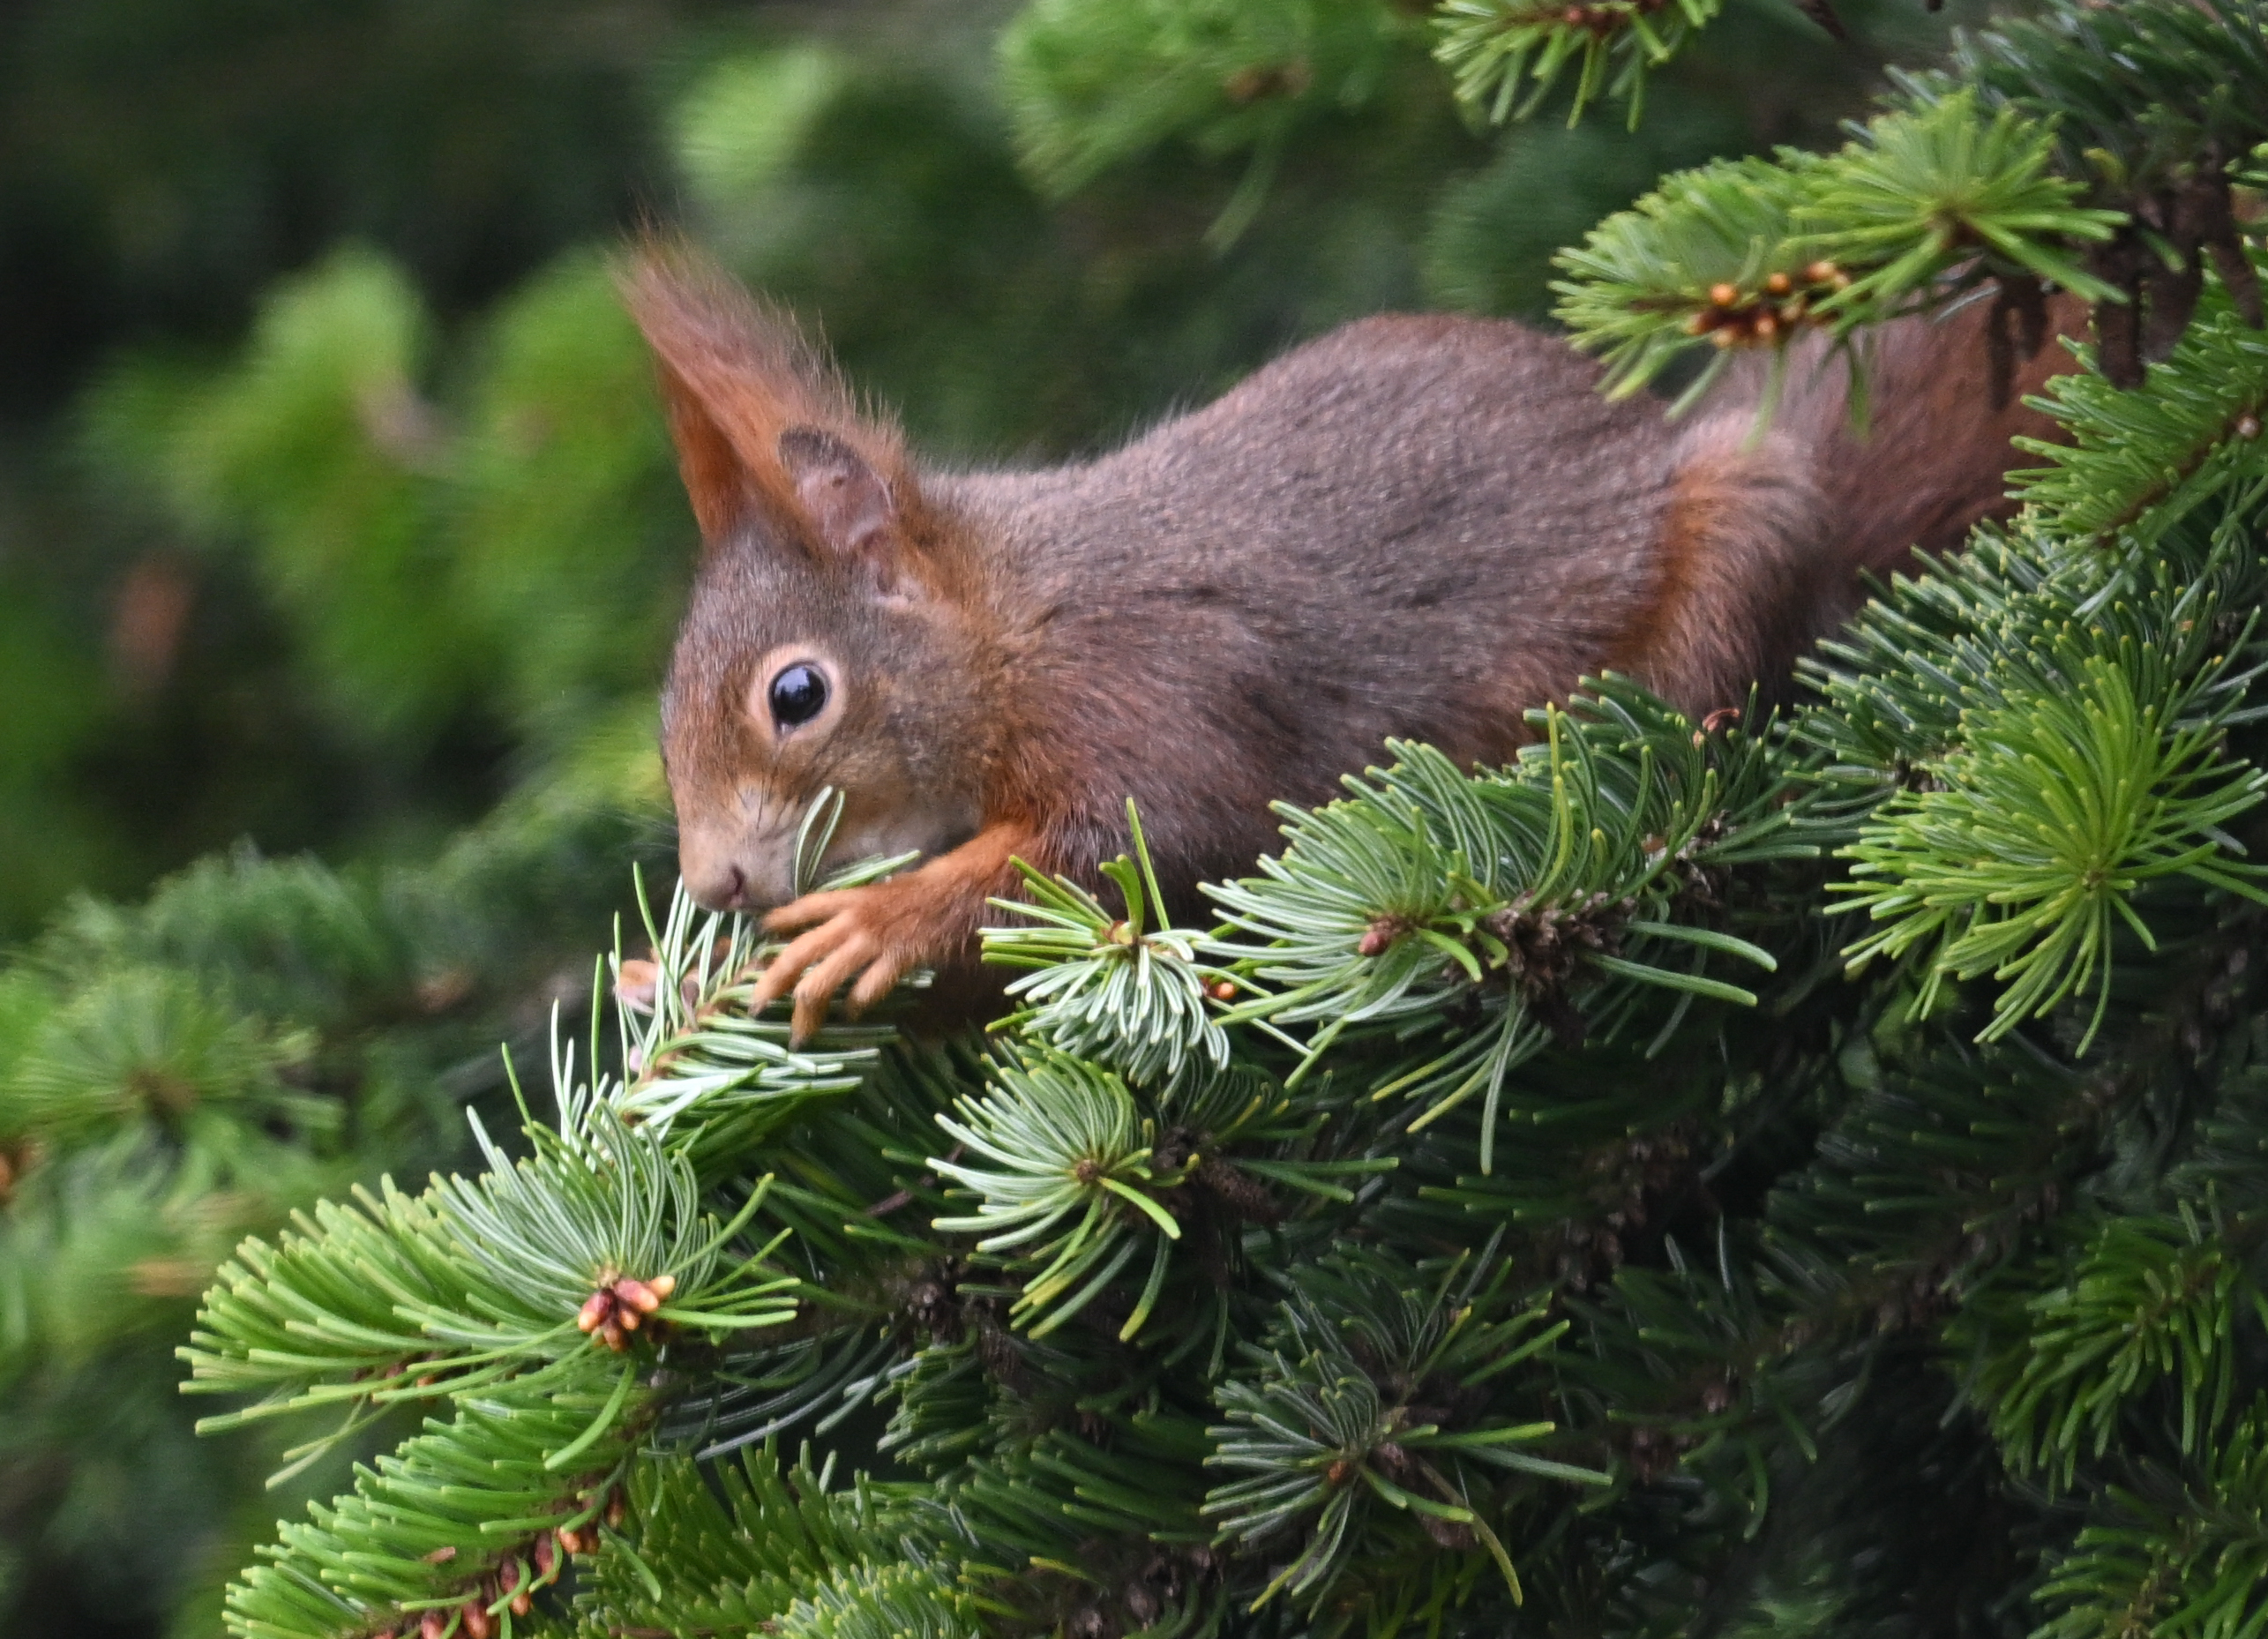 US-Zeitung kürt niedlichstes Eichhörnchenbild des Jahres